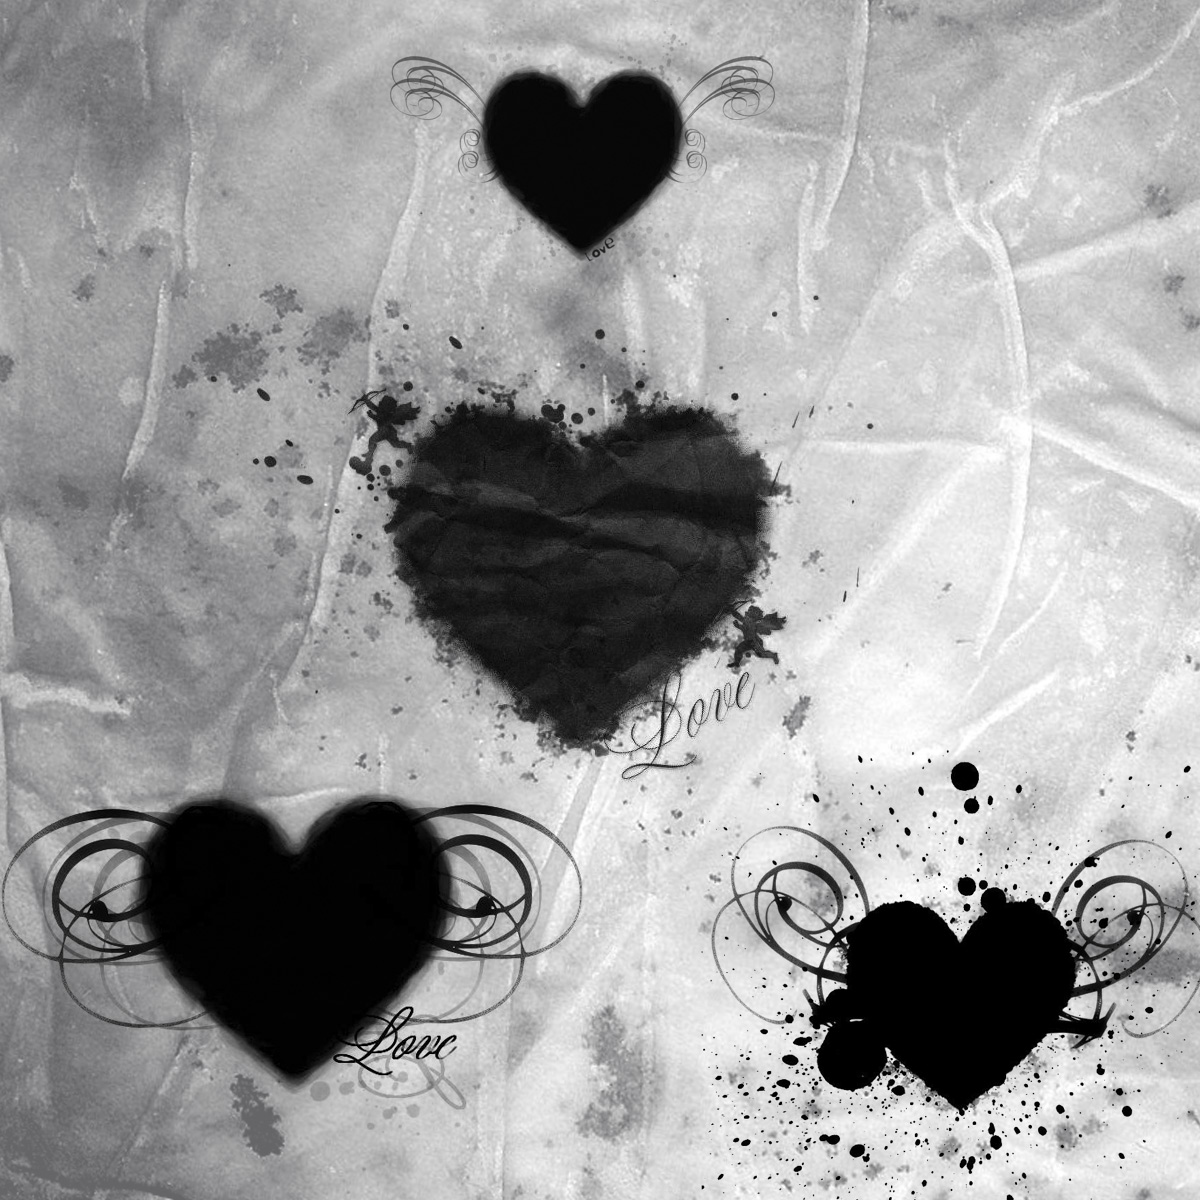 heart photoshop brushes